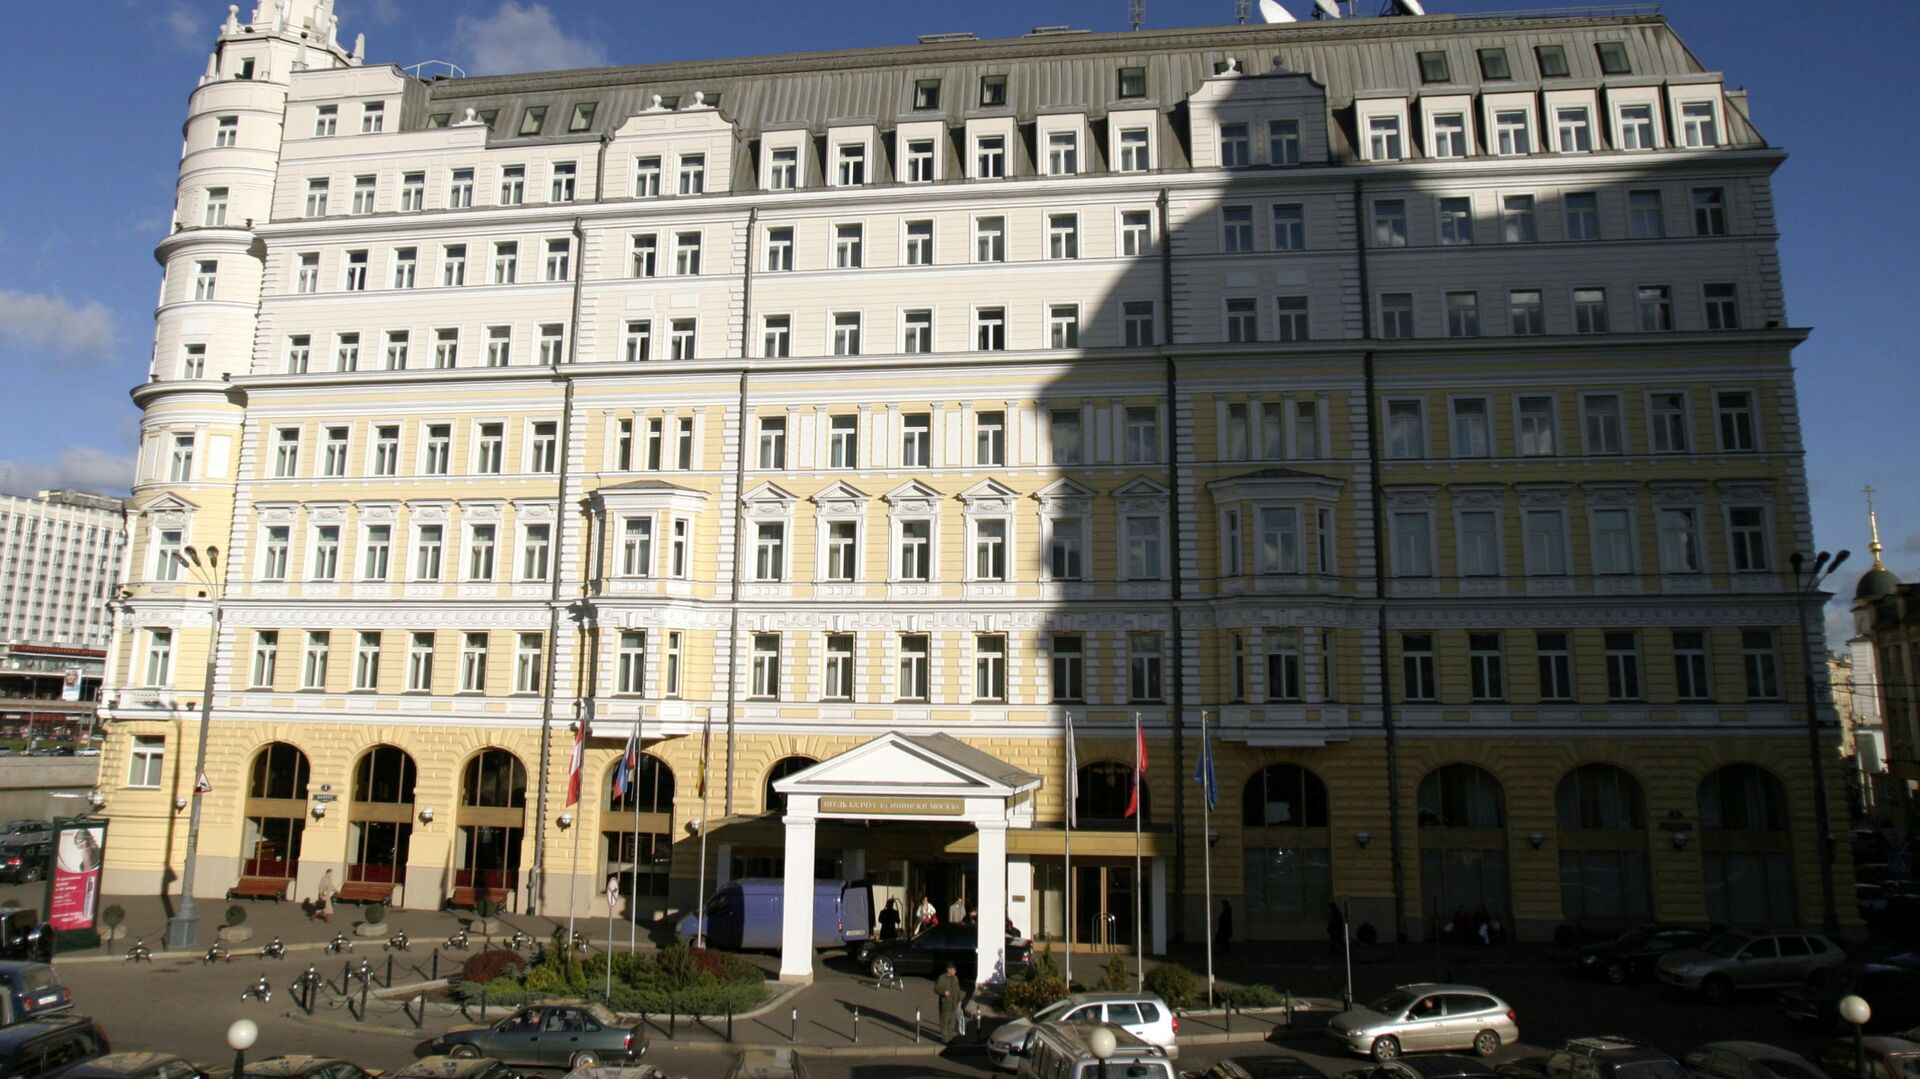 Отель Балчуг Кемпинский - РИА Новости, 1920, 19.08.2020